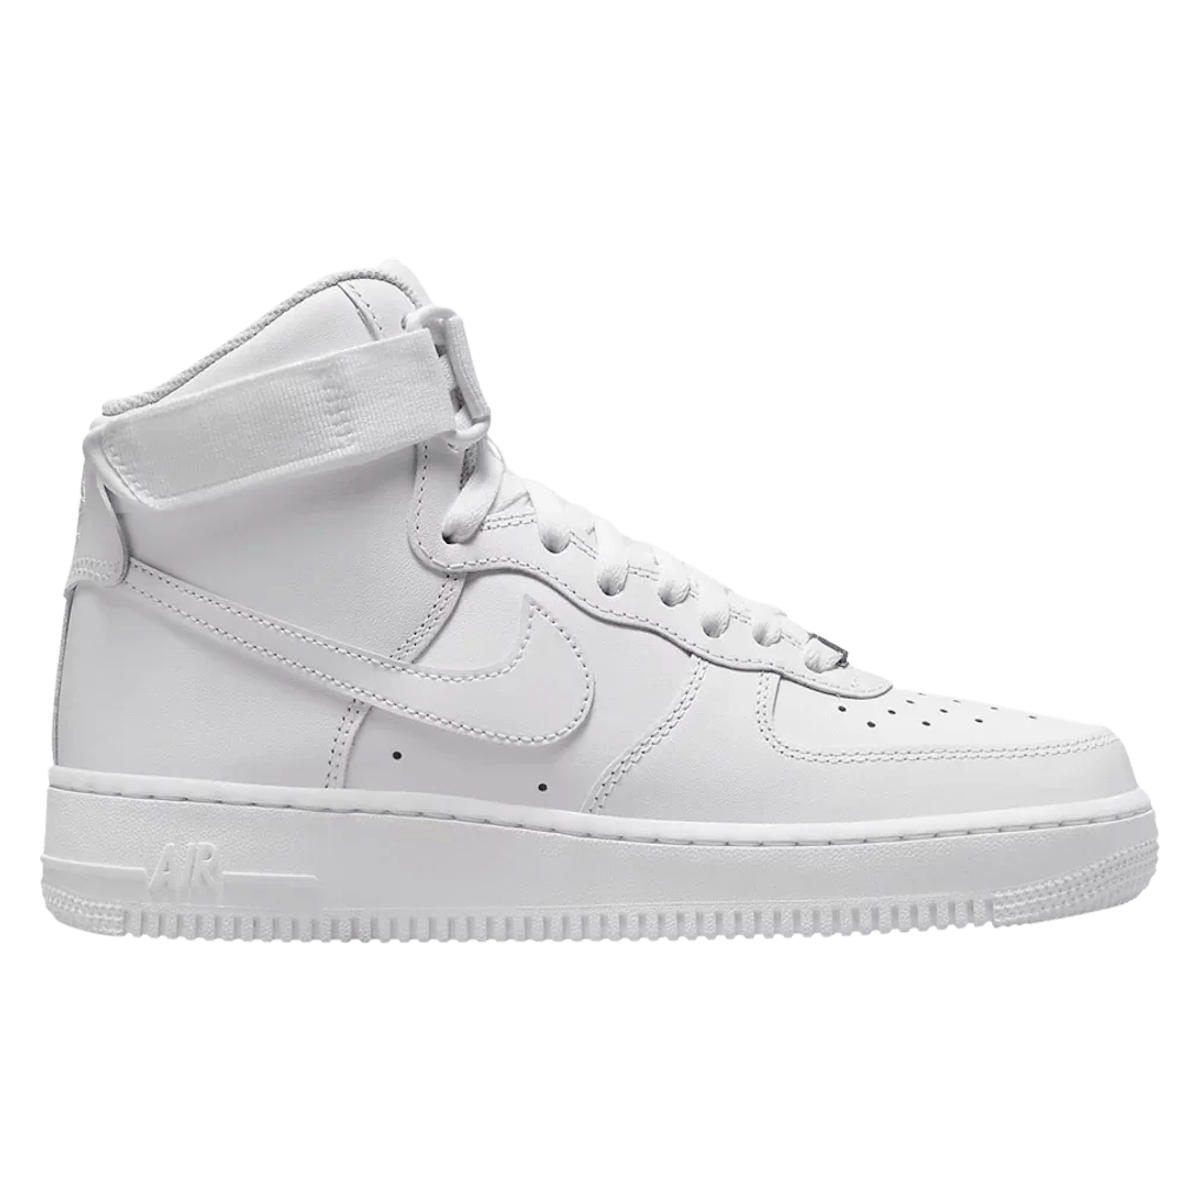 Nike Air Force 1 High "Triple White"